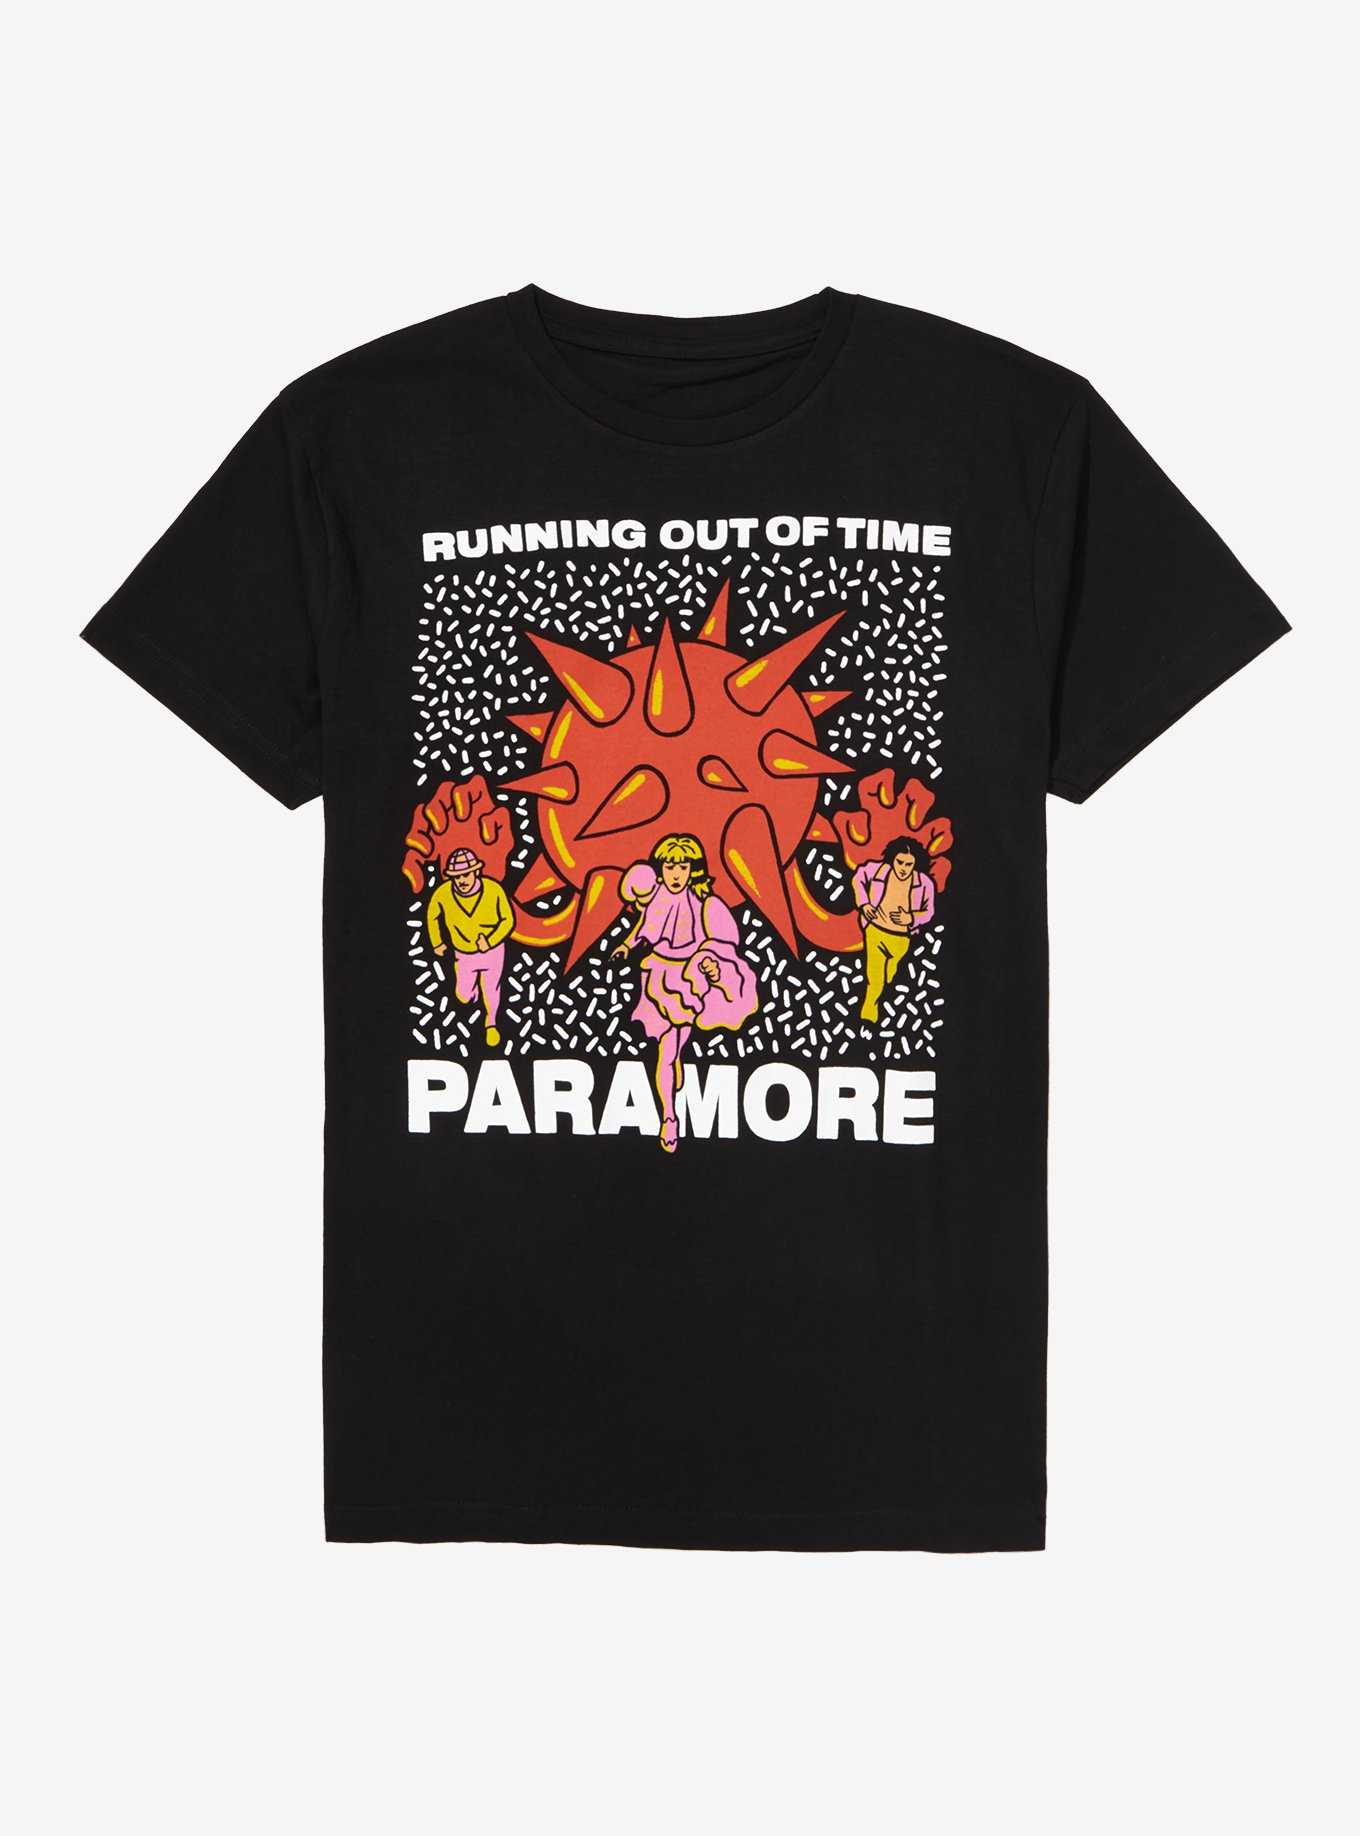 Paramore shirts..need these  Paramore shirt, Cute shirts, Hipster